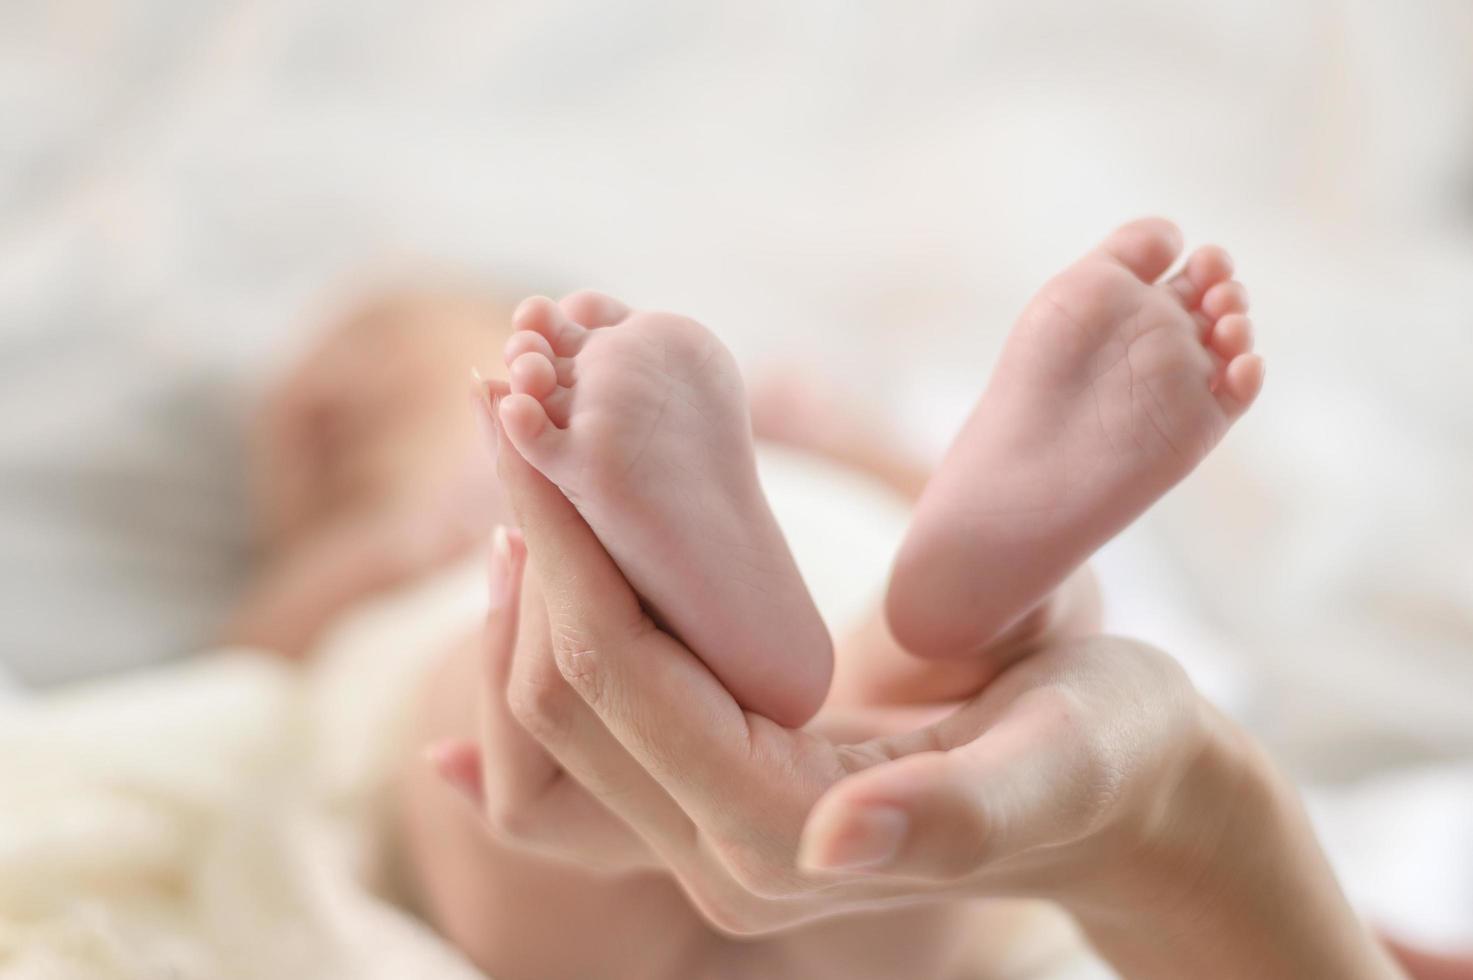 perto da mão segurando os pés do bebê recém-nascido foto